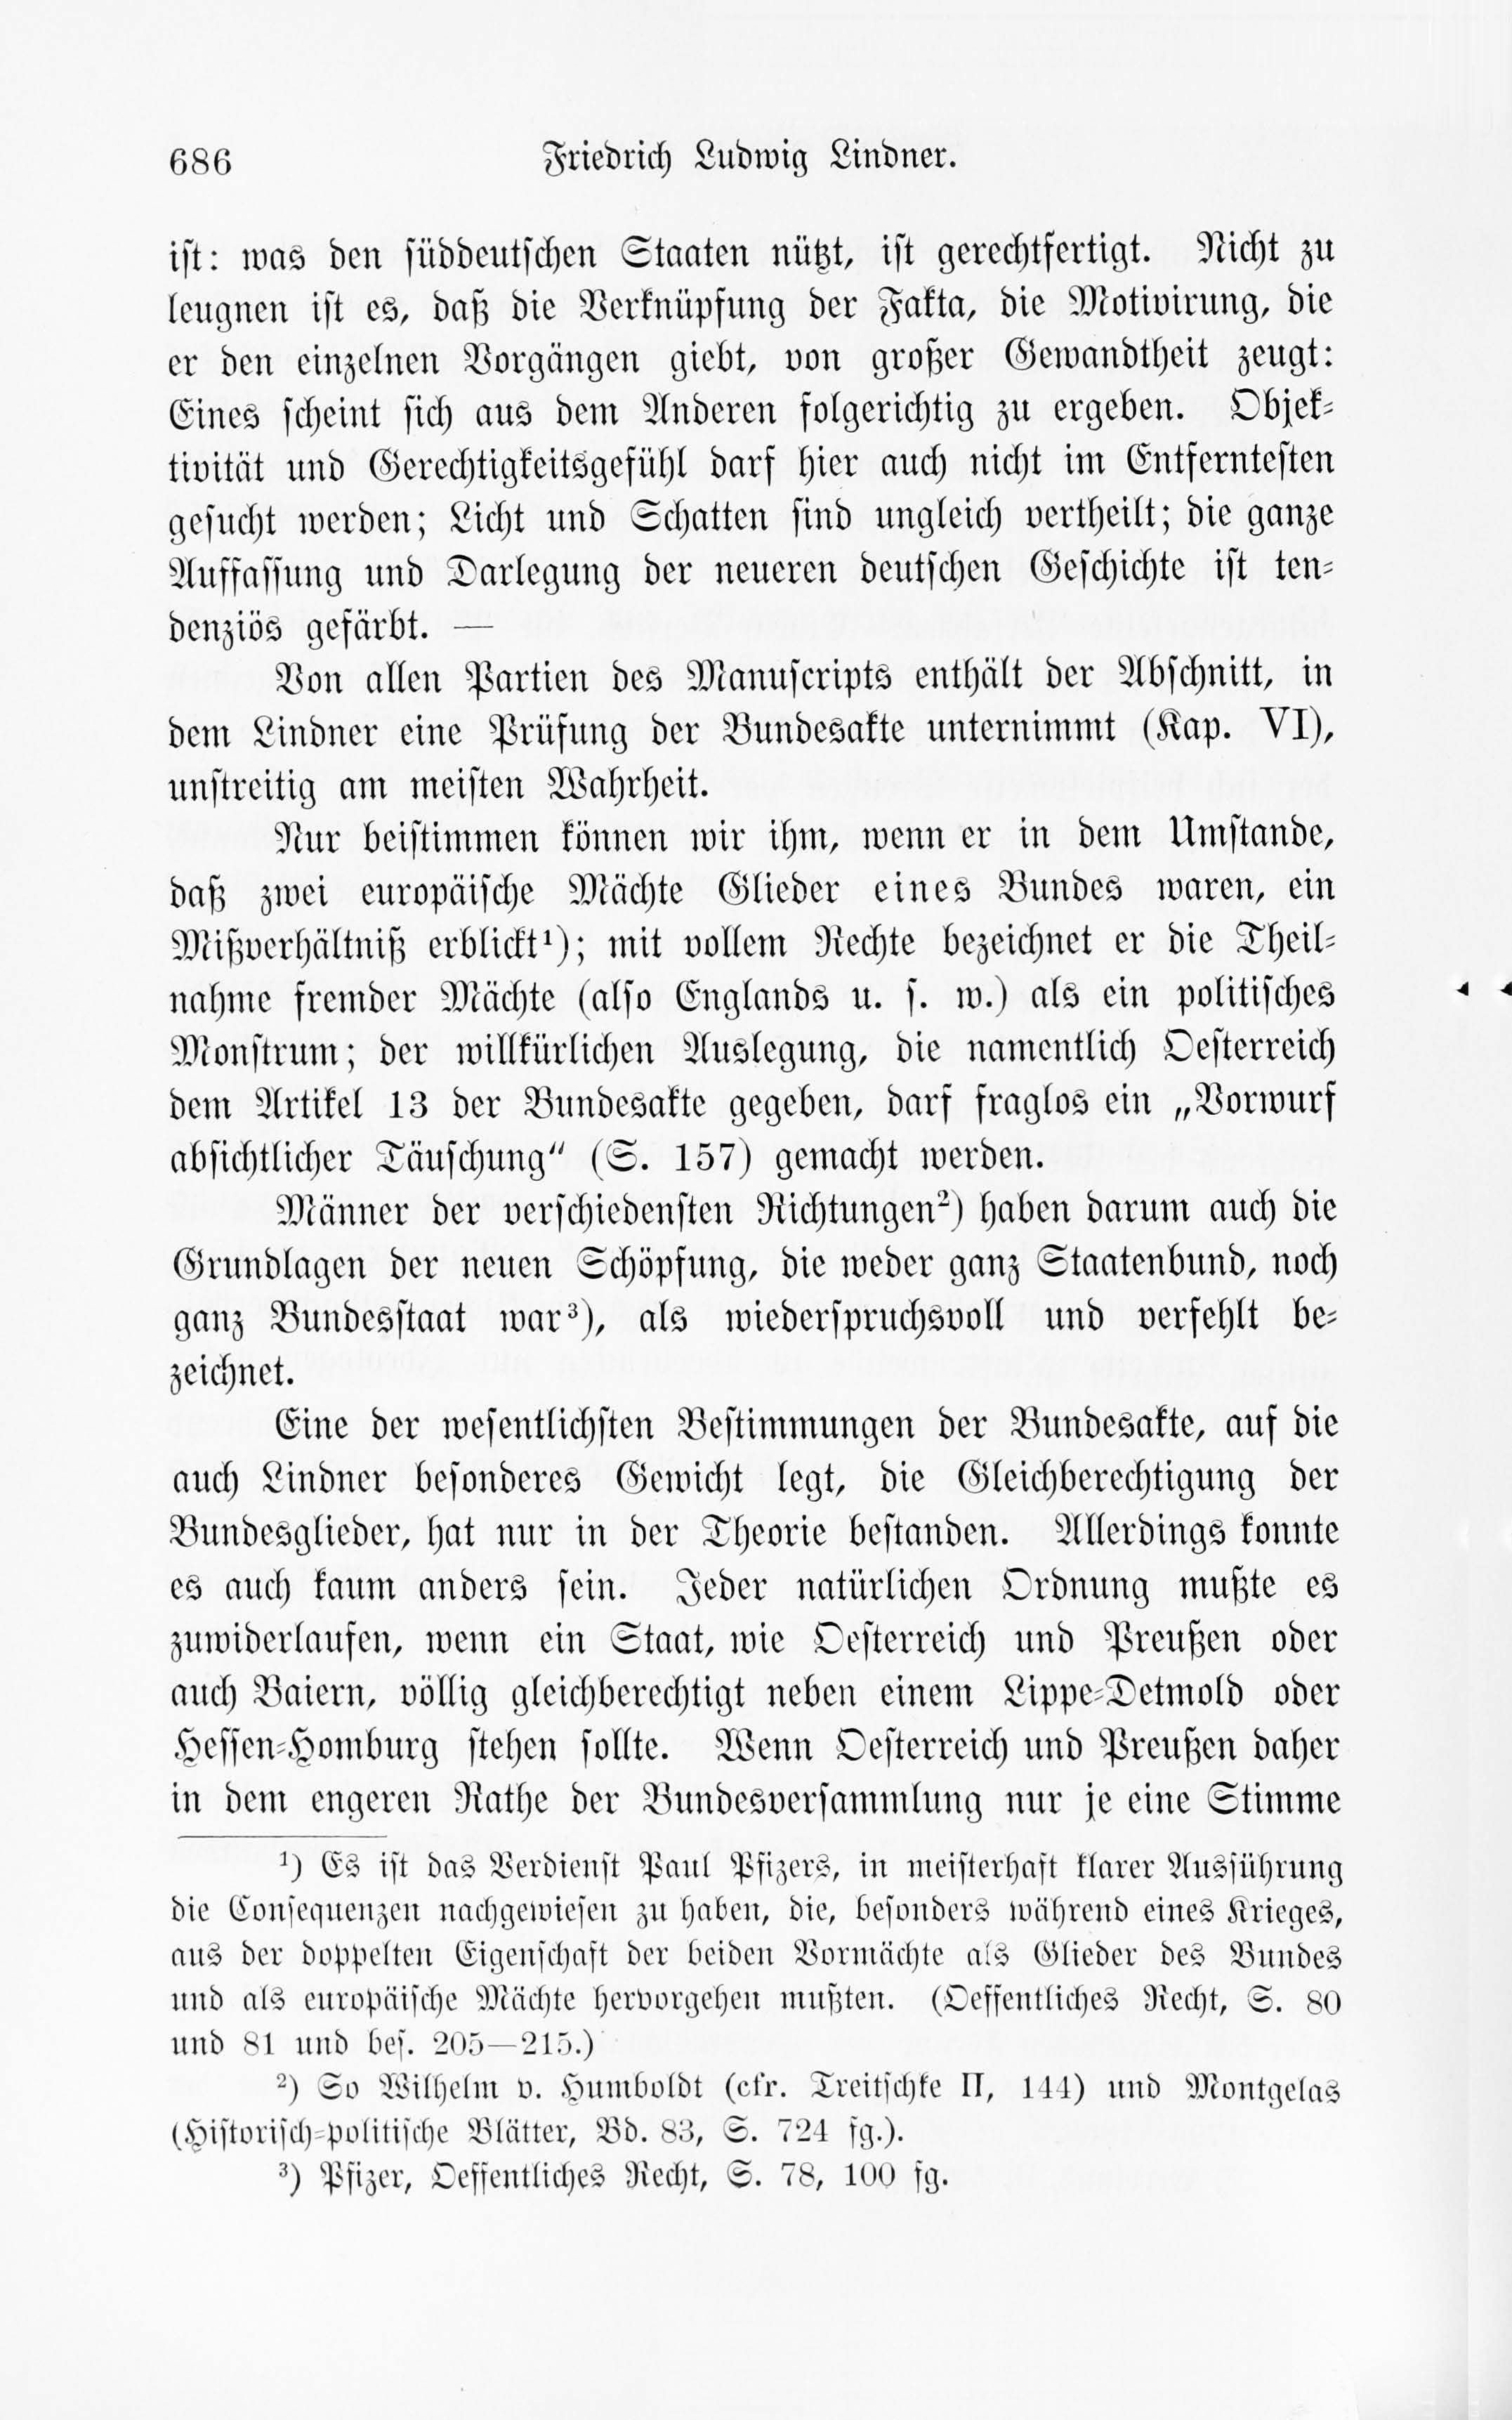 Leben und Schriften des Kurländers Friedrich Ludwig Lindner [2] (1895) | 16. Main body of text